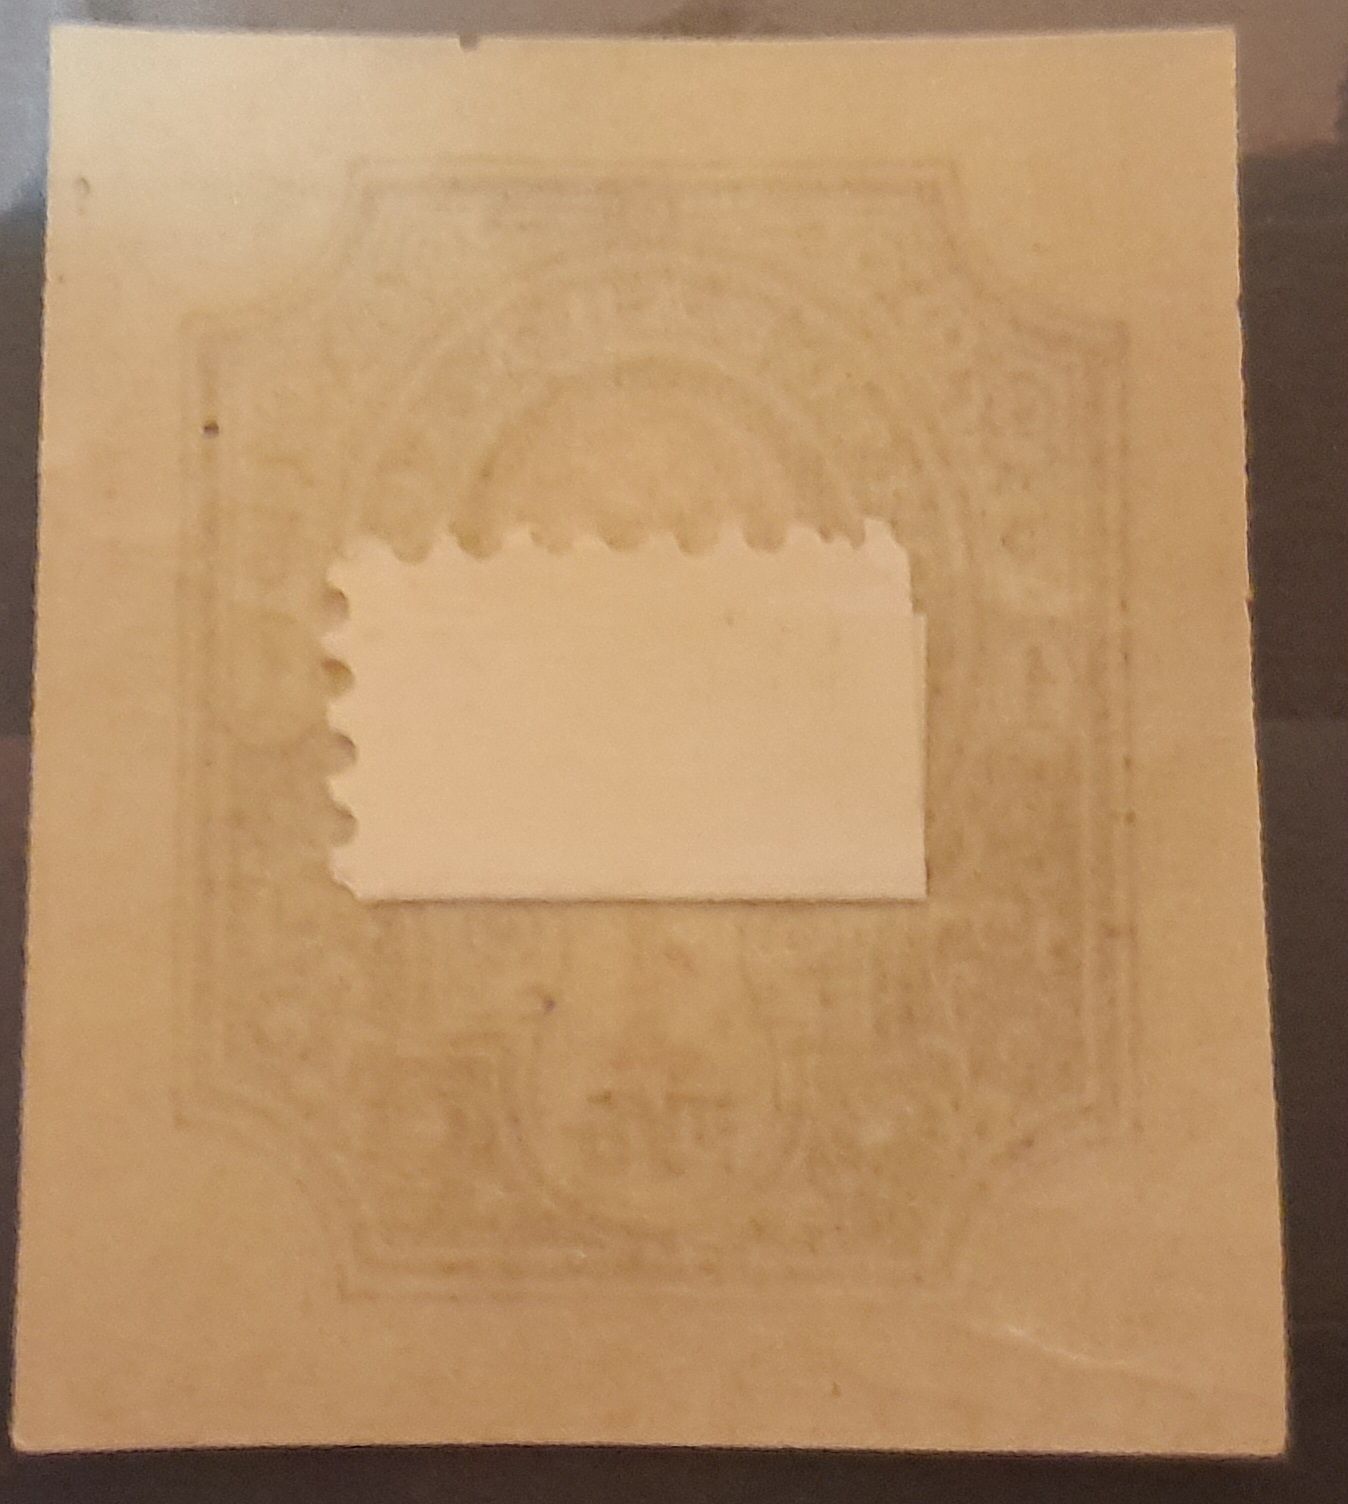 Znaczek pocztowy Imperium Rosyjskie 1917, jeden rubel